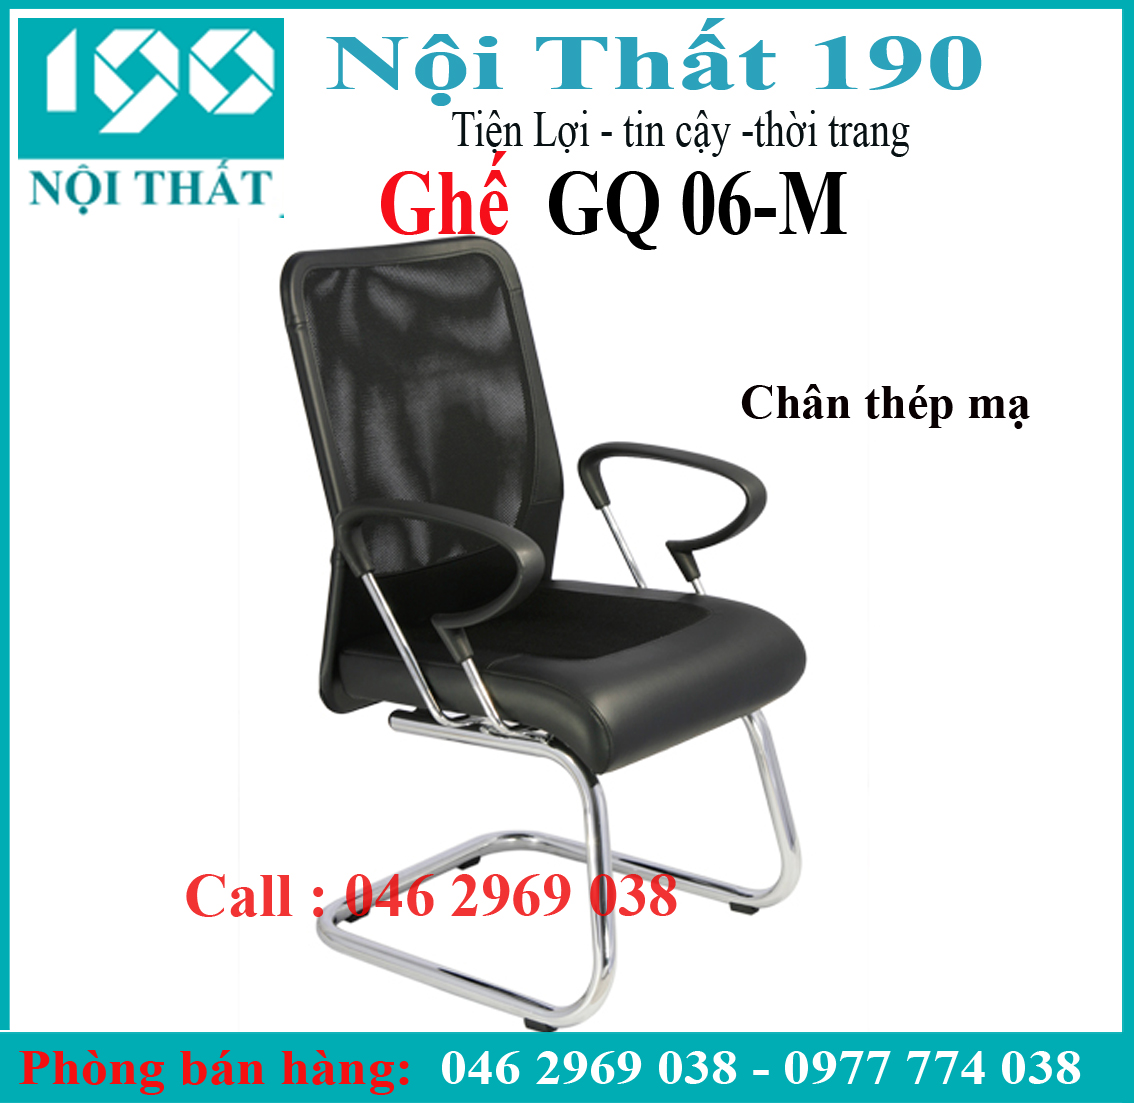 Ghế chân quỳ GQ06-M